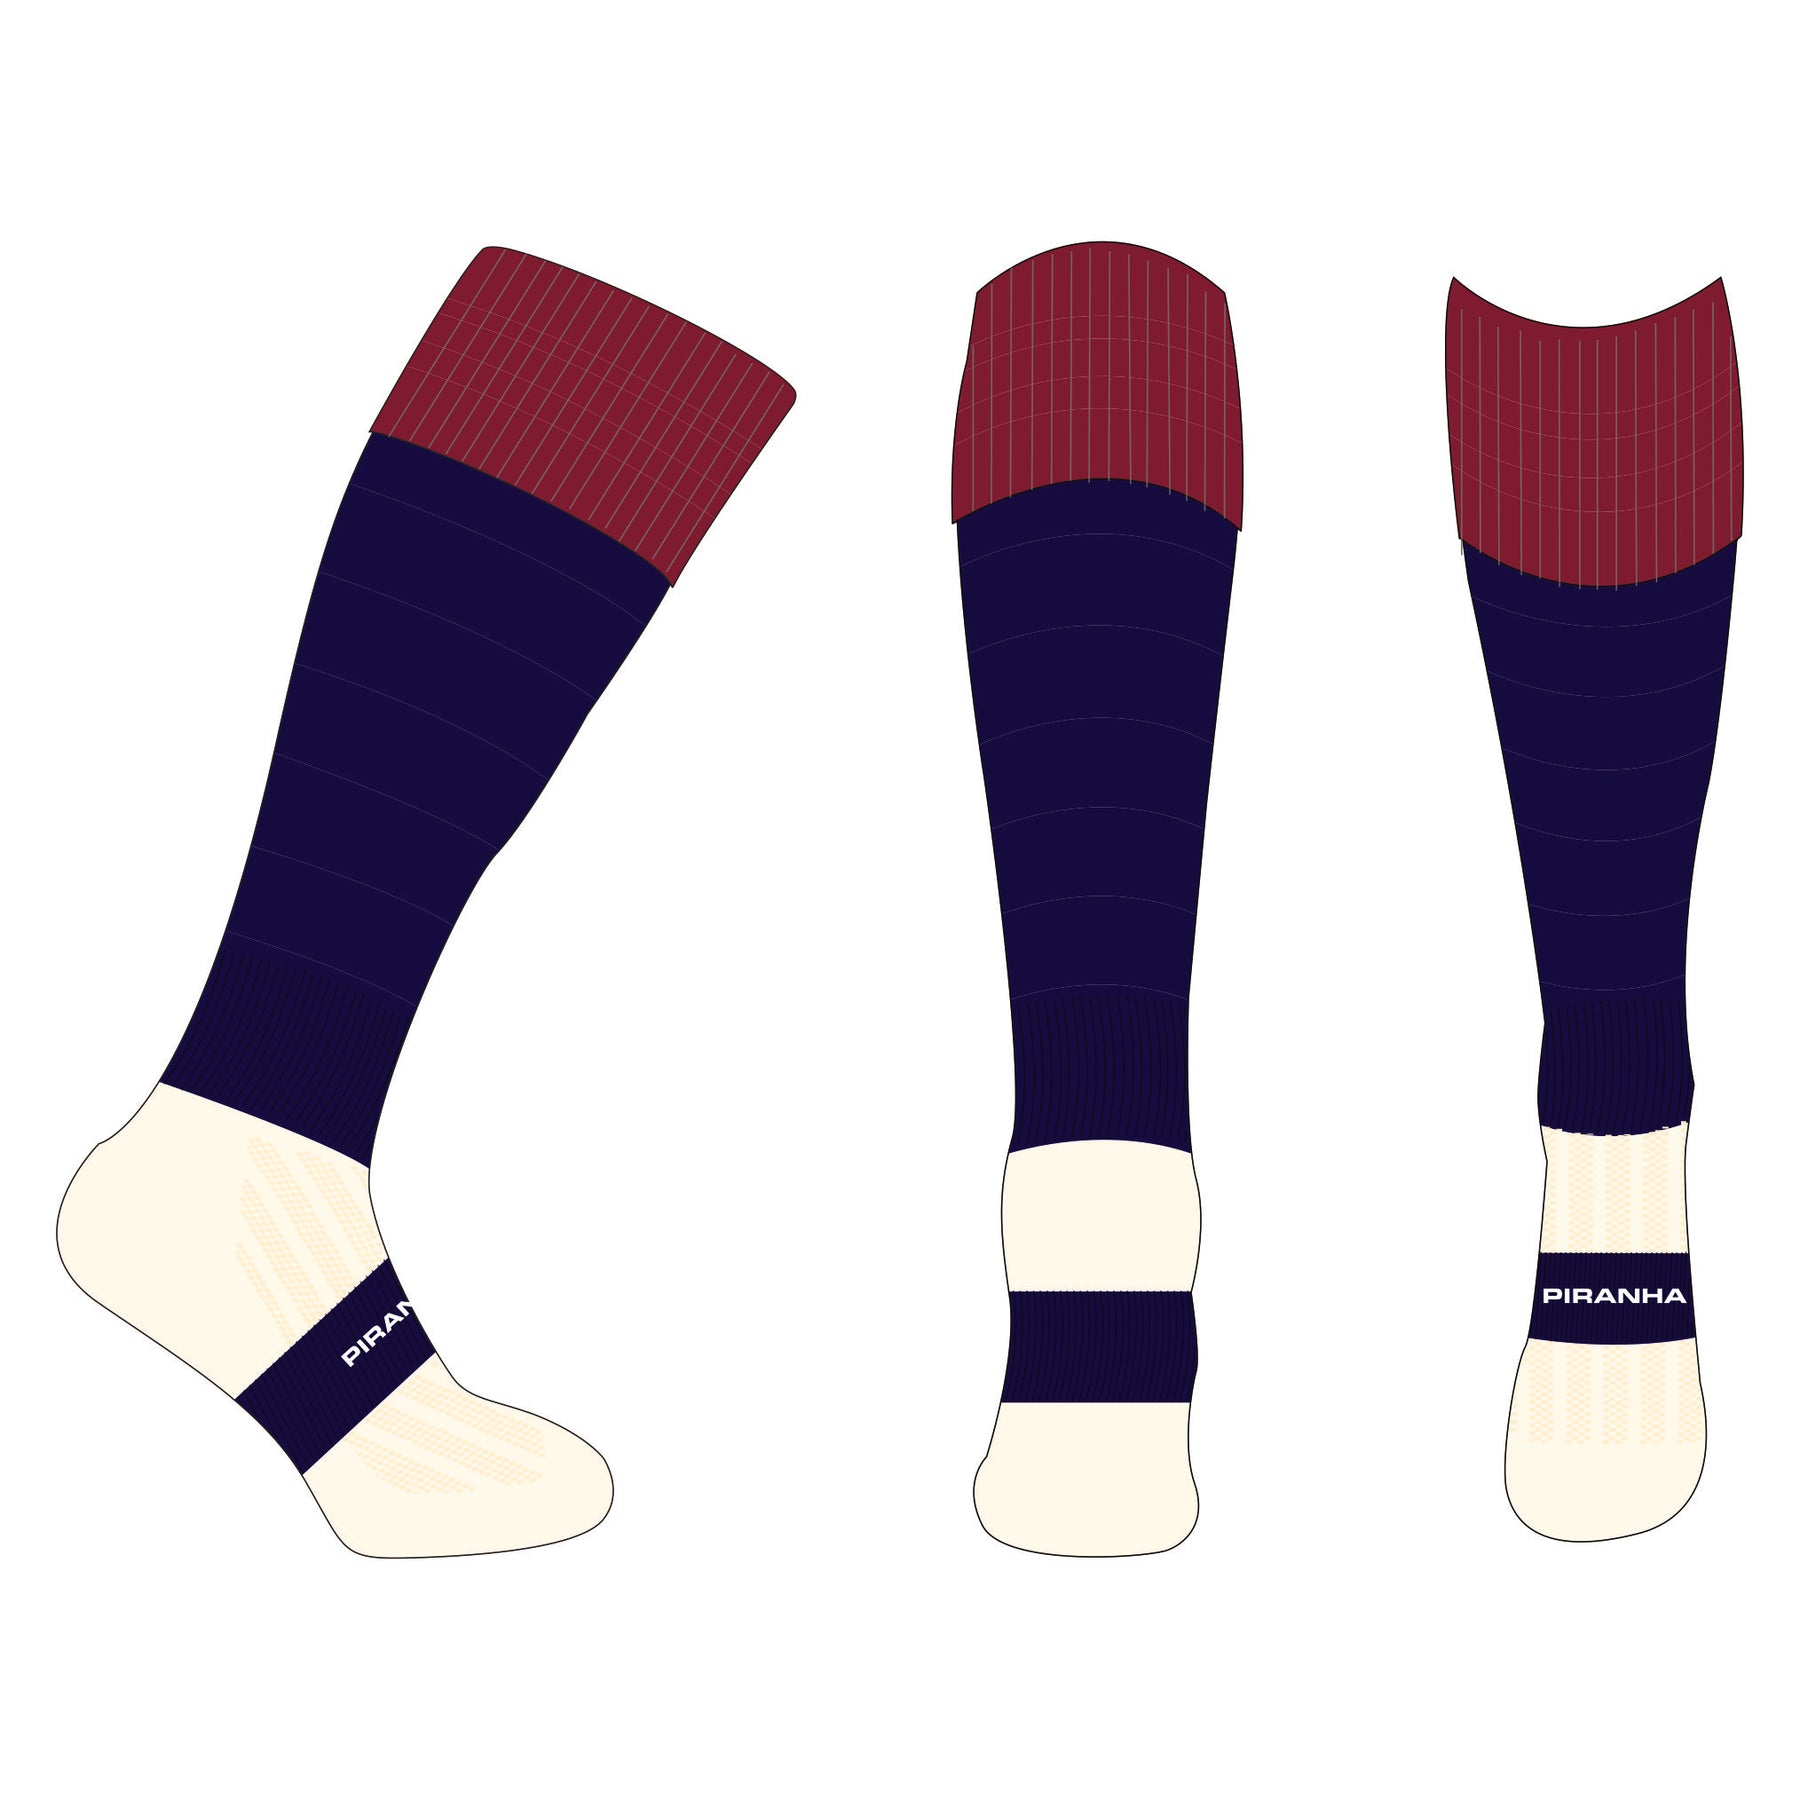 Royal Grammar School Senior Games Socks: Navy